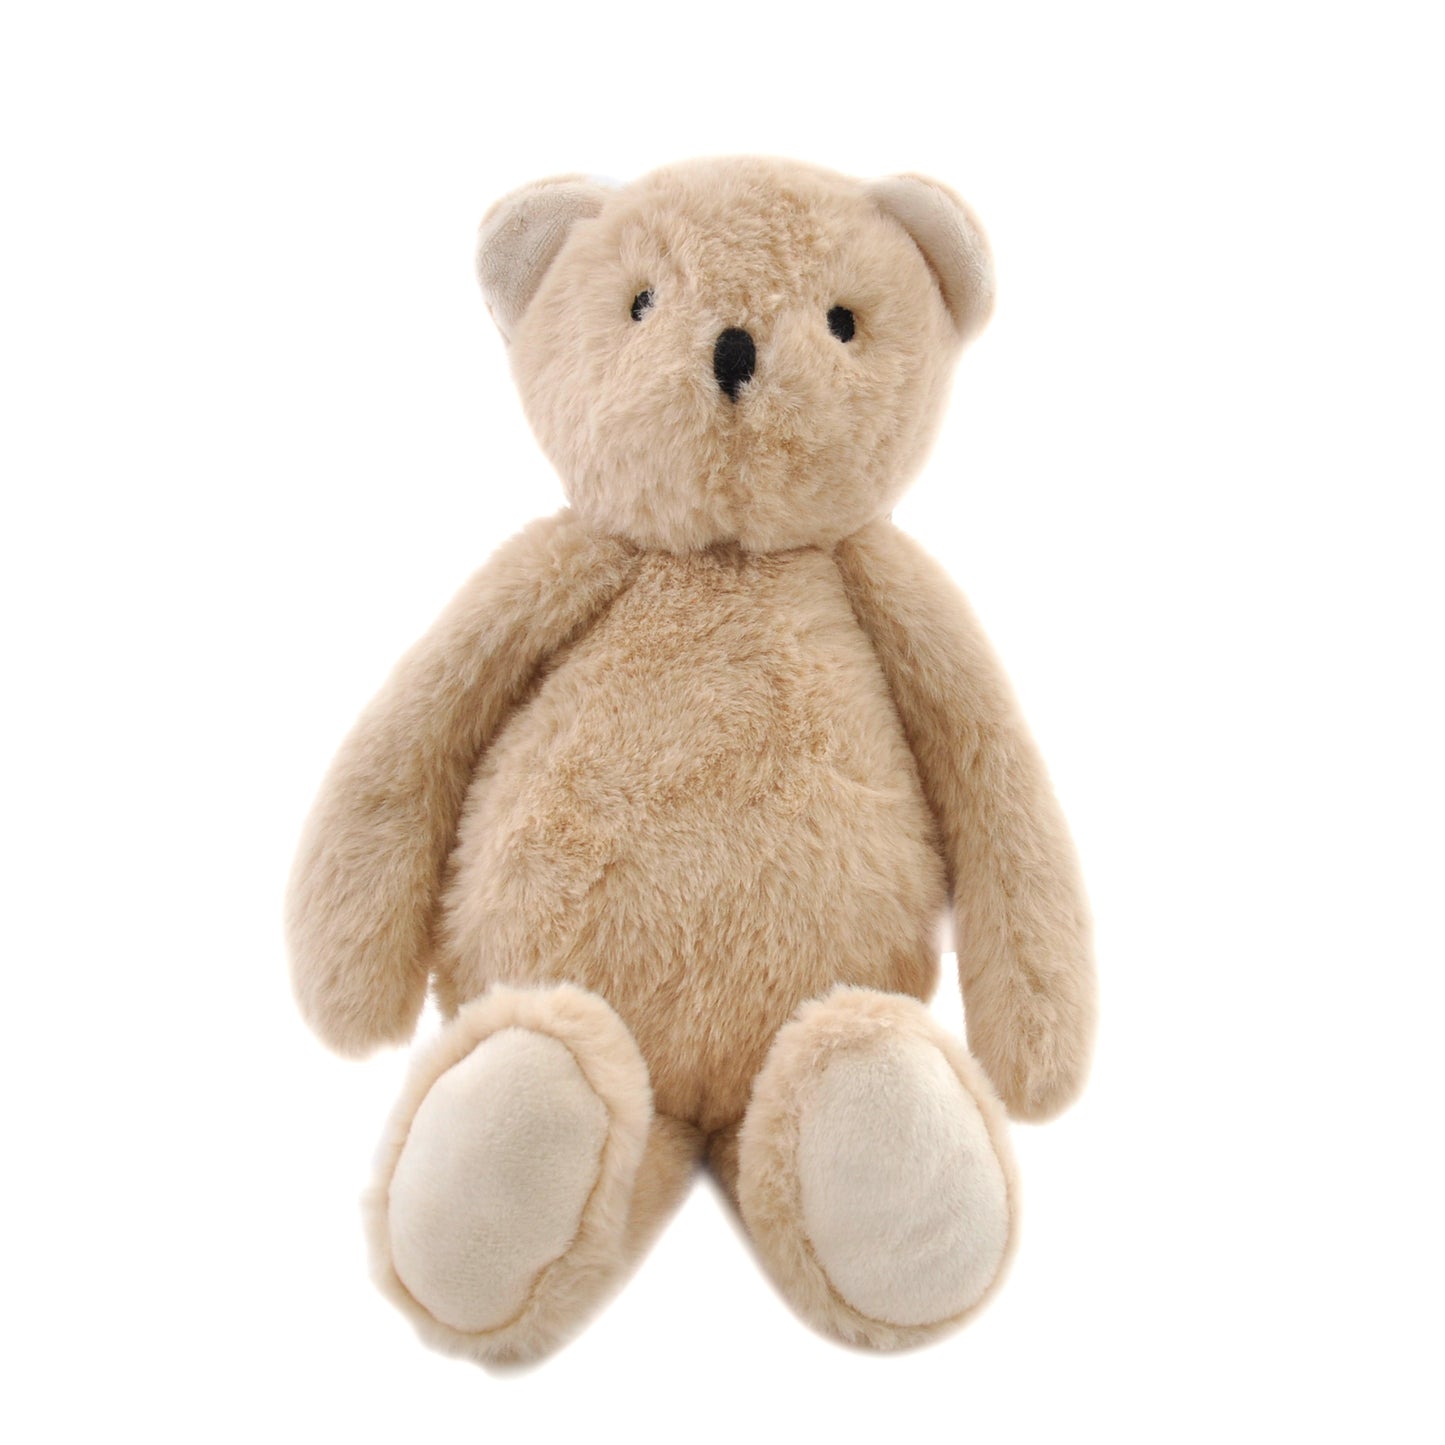 Baby Plush Toy - Bear